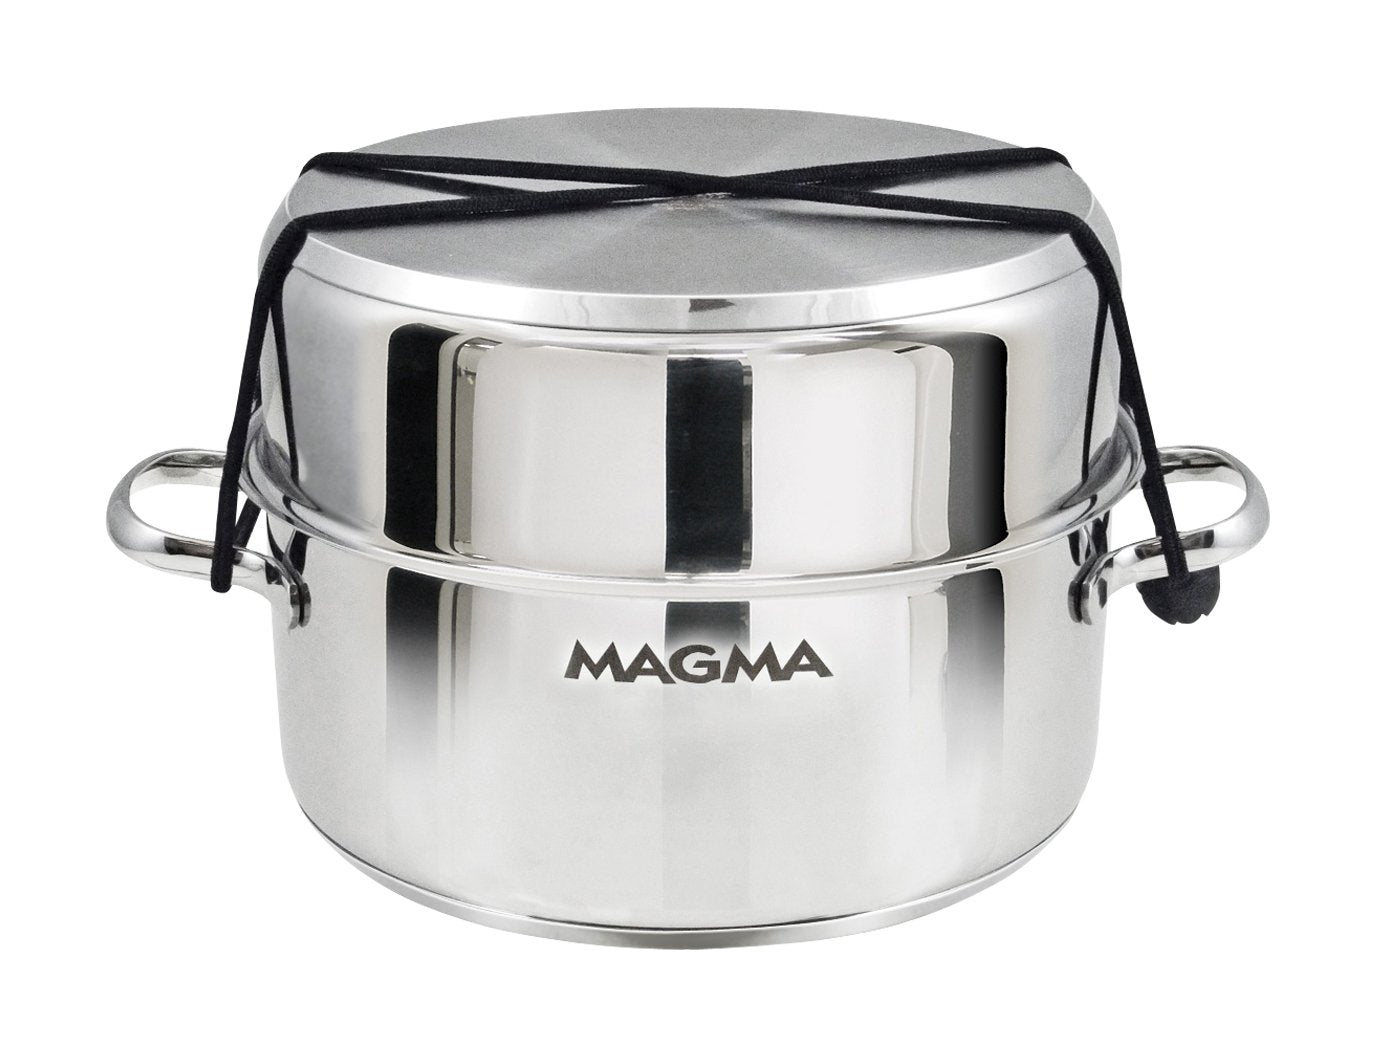 Magma 10-Piece Ceramica Gourmet “Nesting” Cookware Set (A10-366